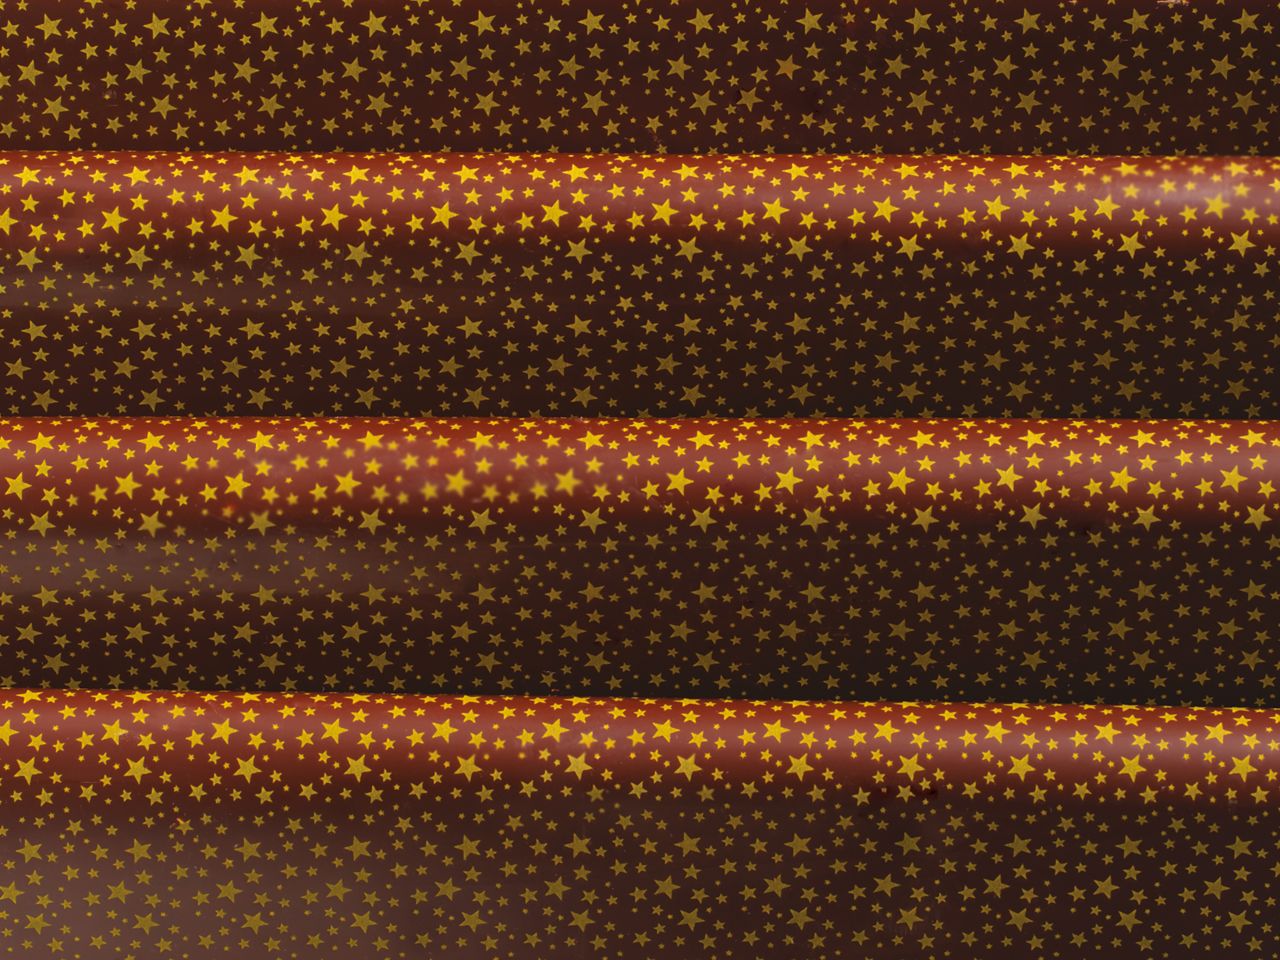 Transferfolie: Constellation, Kakaobutter, Rot-Gold, 40 x 25 cm